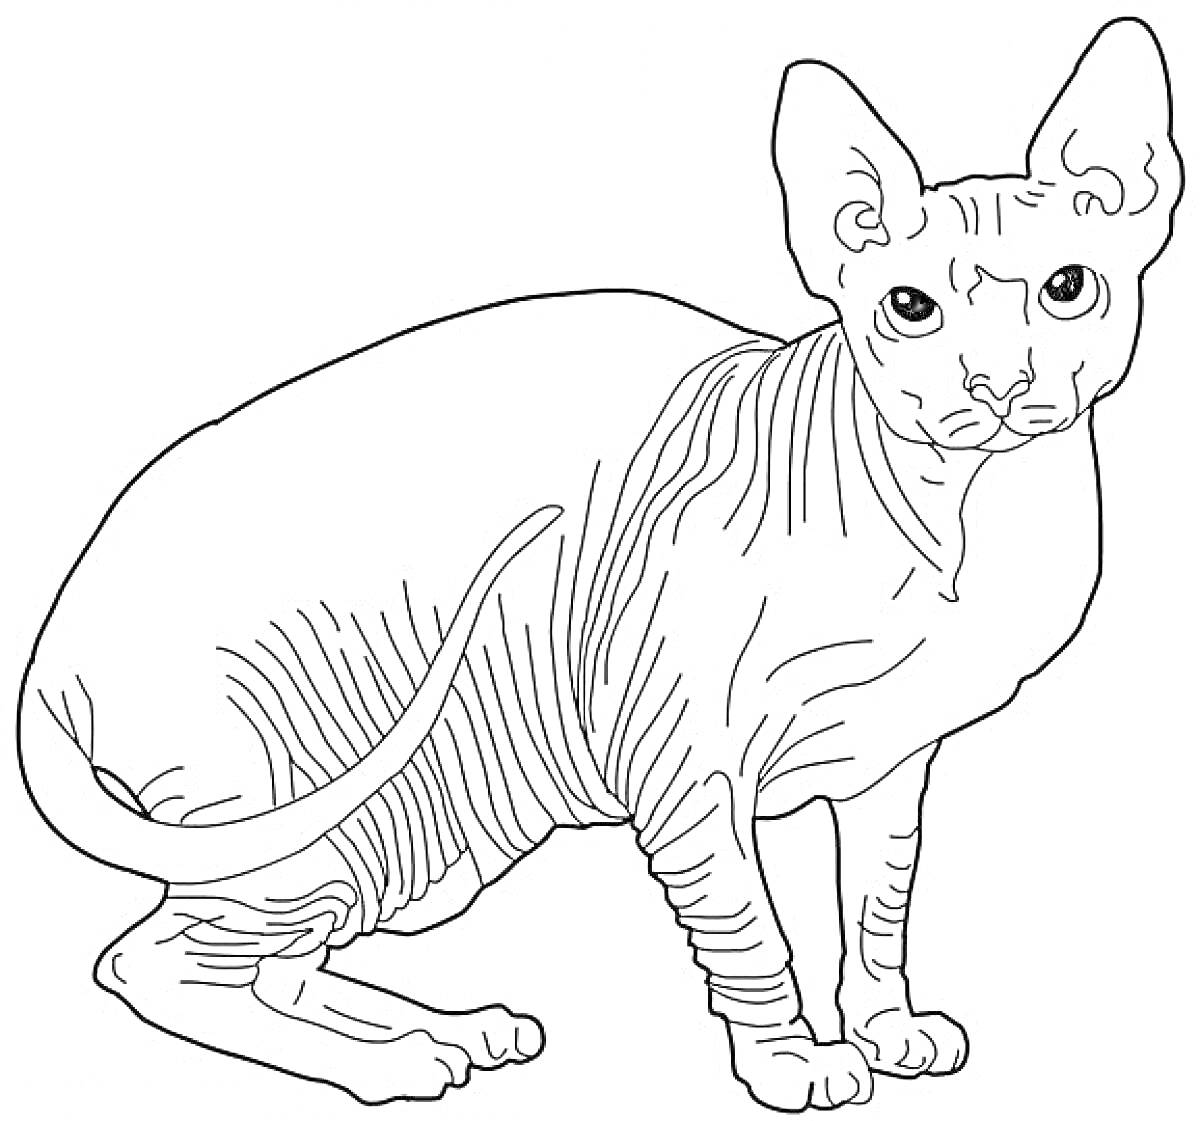 Лысая кошка Сфинкс сидит с наклоненной головой